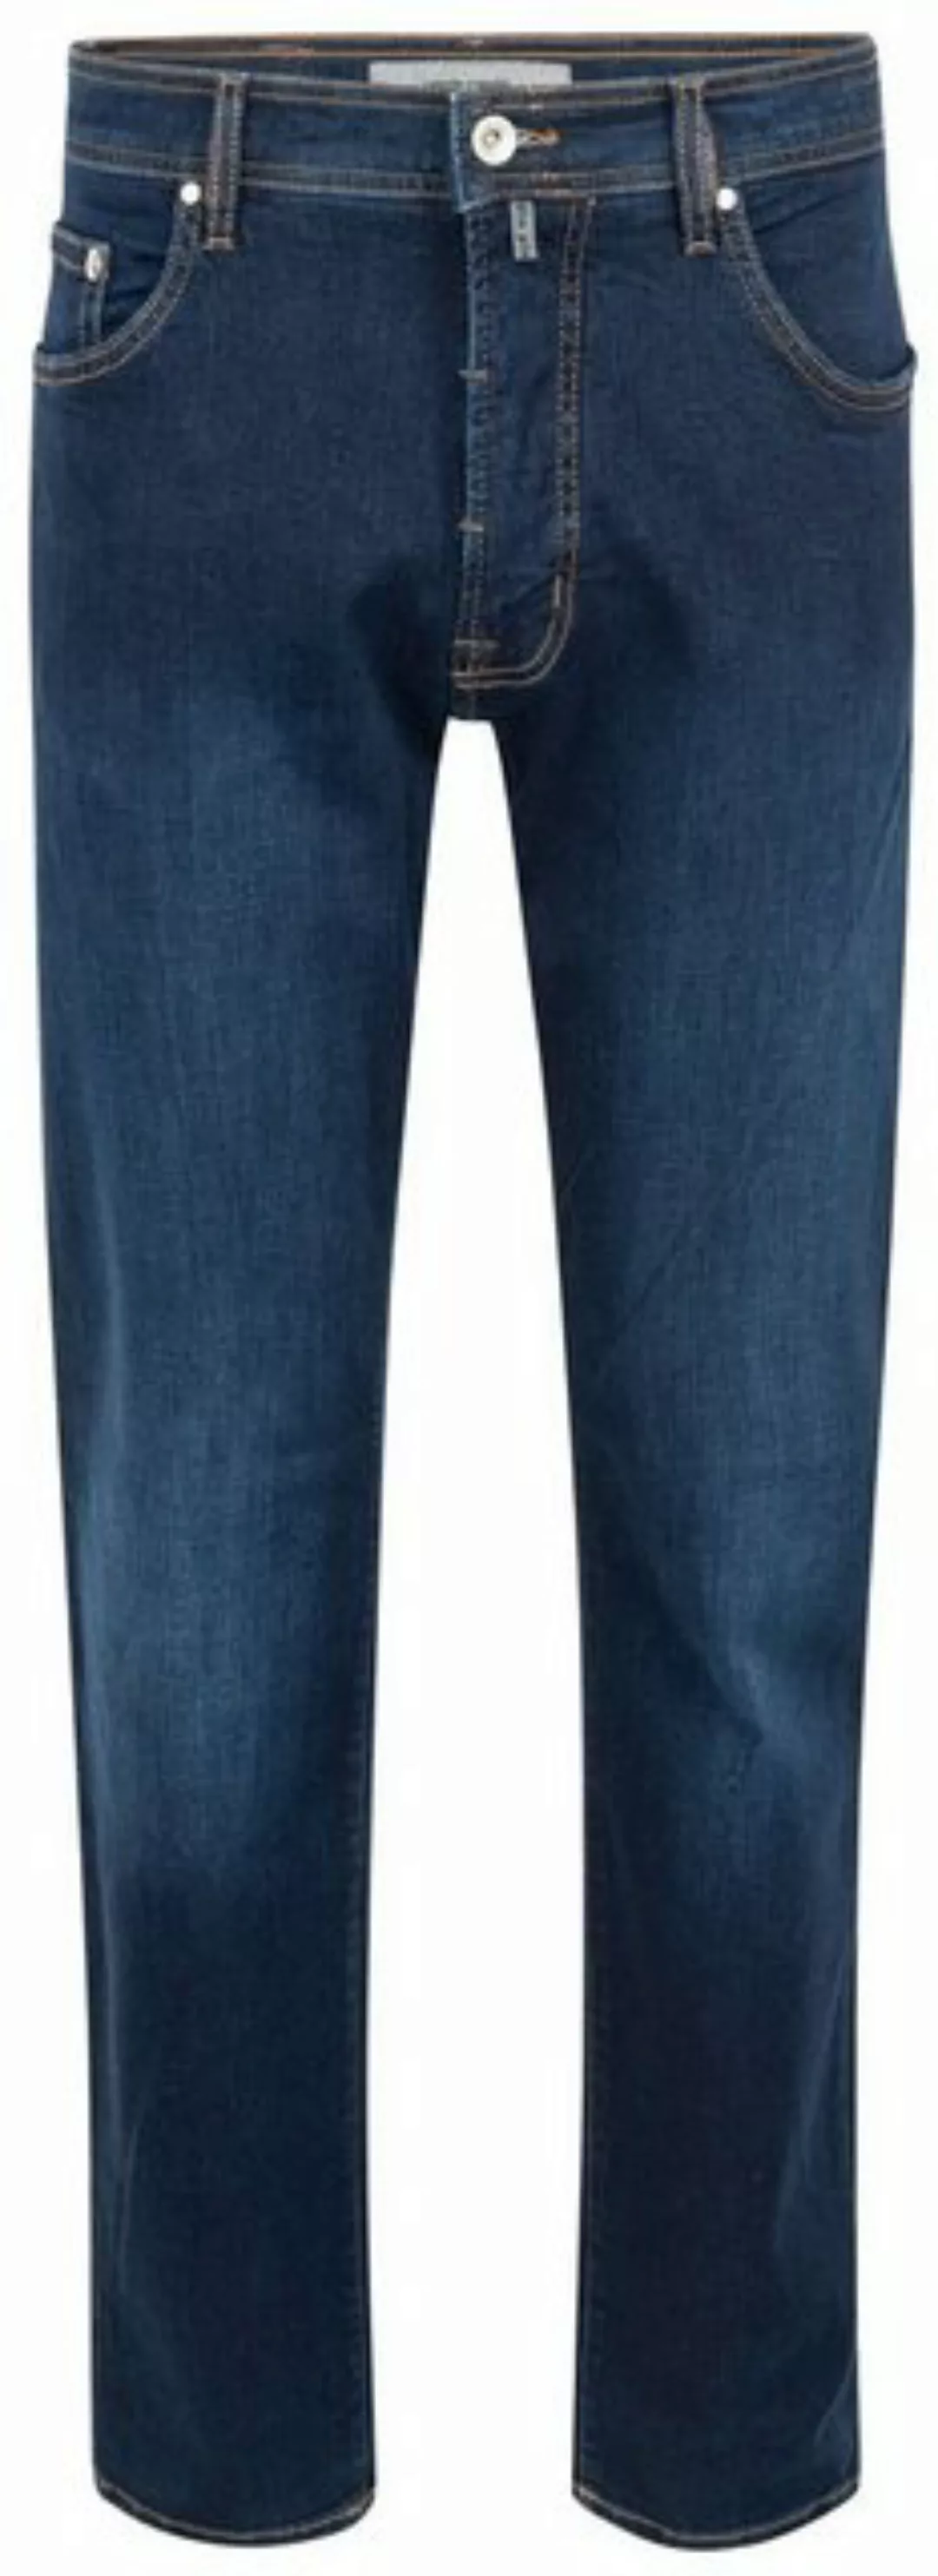 Pierre Cardin 5-Pocket-Jeans PIERRE CARDIN DEAUVILLE dark blue used buffies günstig online kaufen